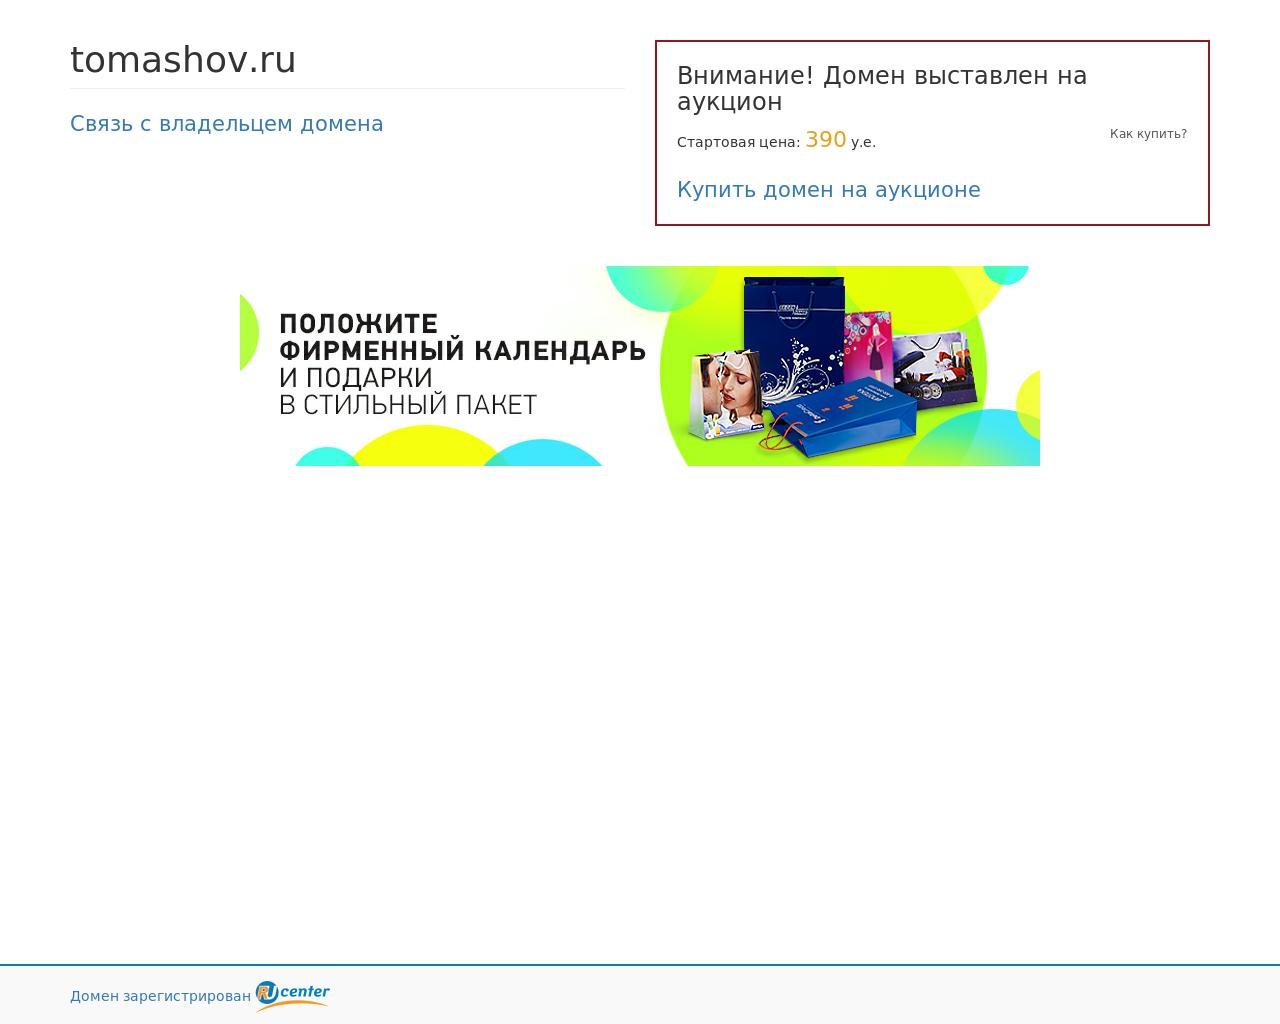 Изображение сайта tomashov.ru в разрешении 1280x1024